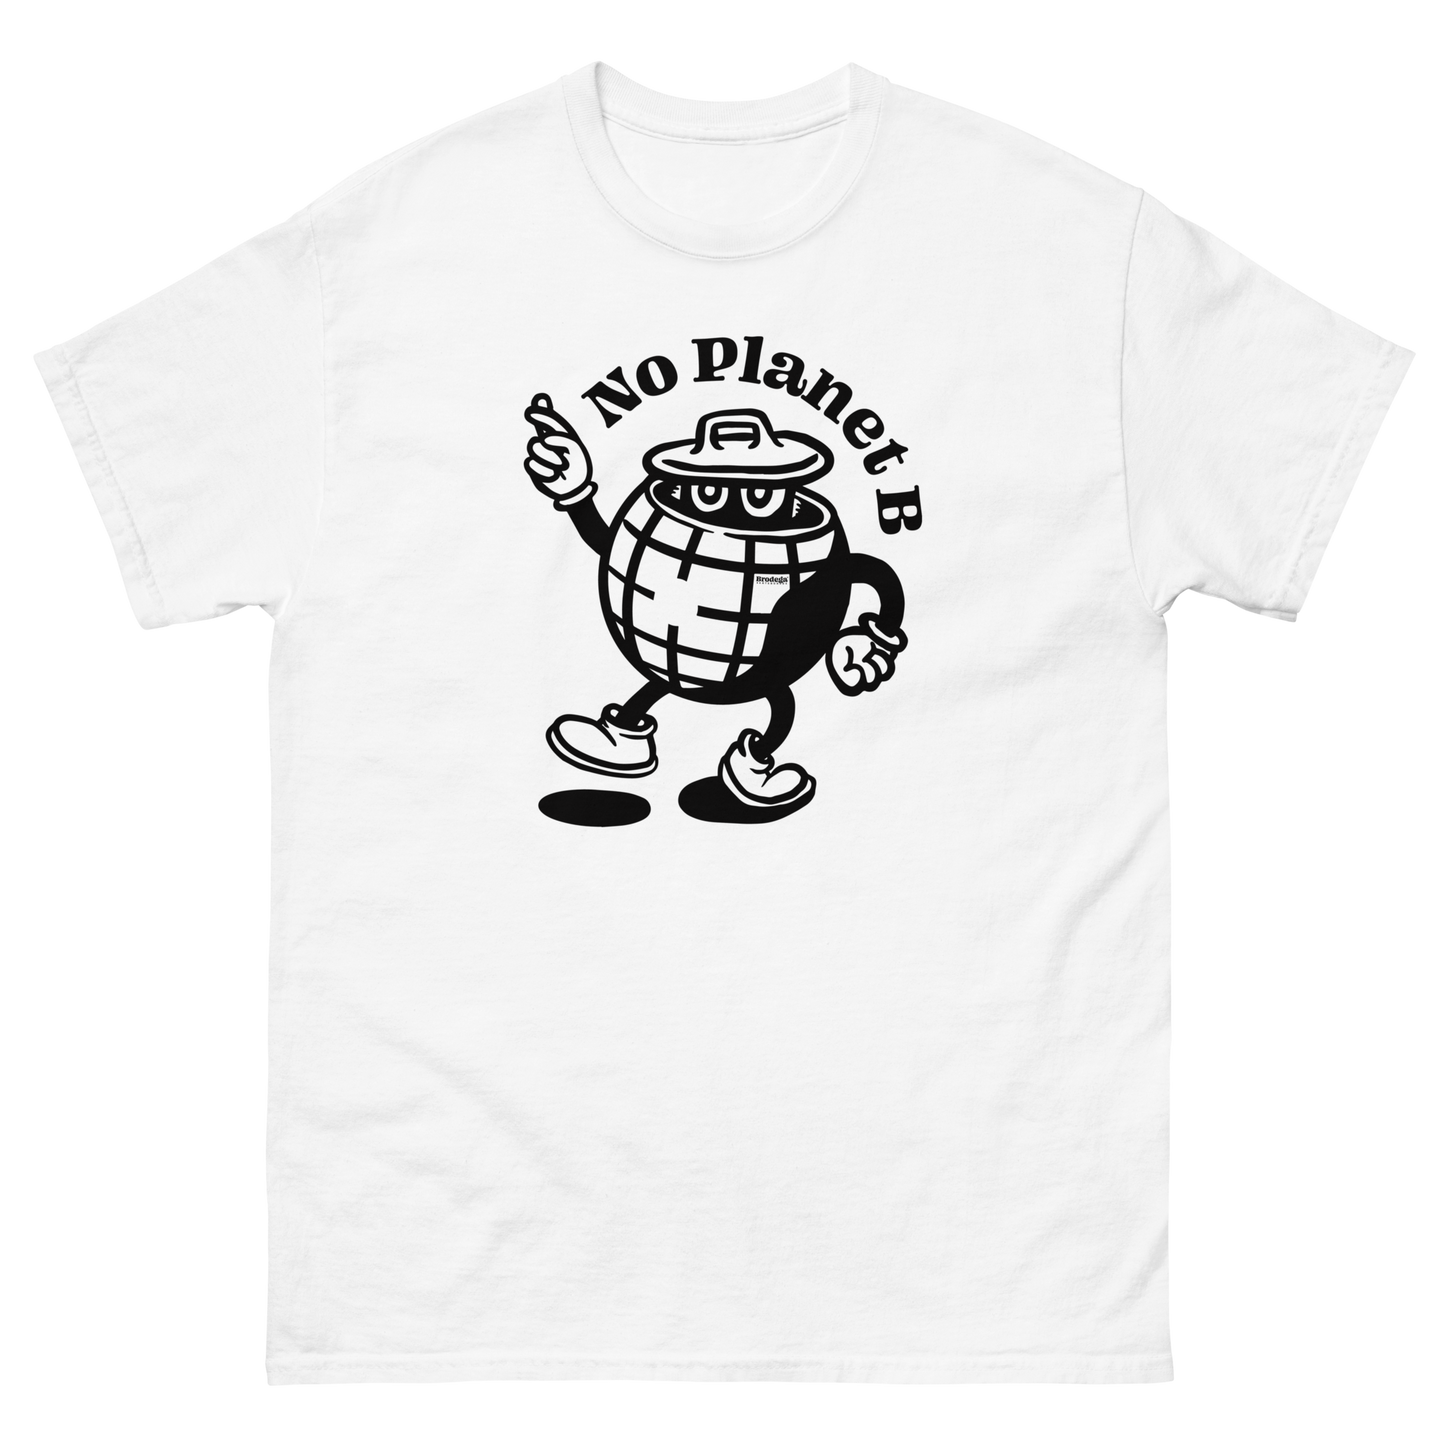 No Planet B / T-Shirt